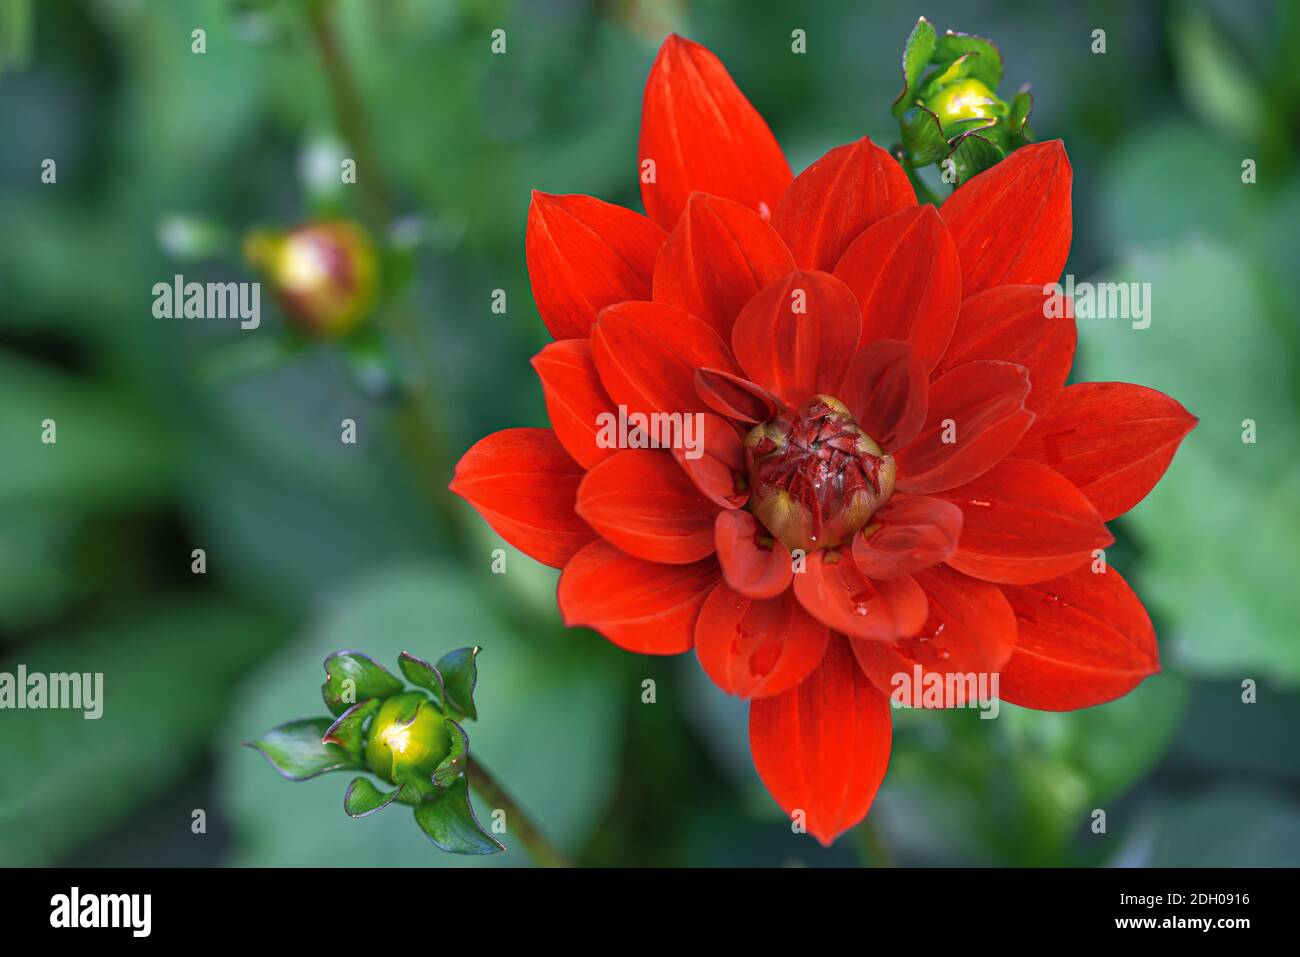 Red dahlia flower blossom head close up Stock Photo